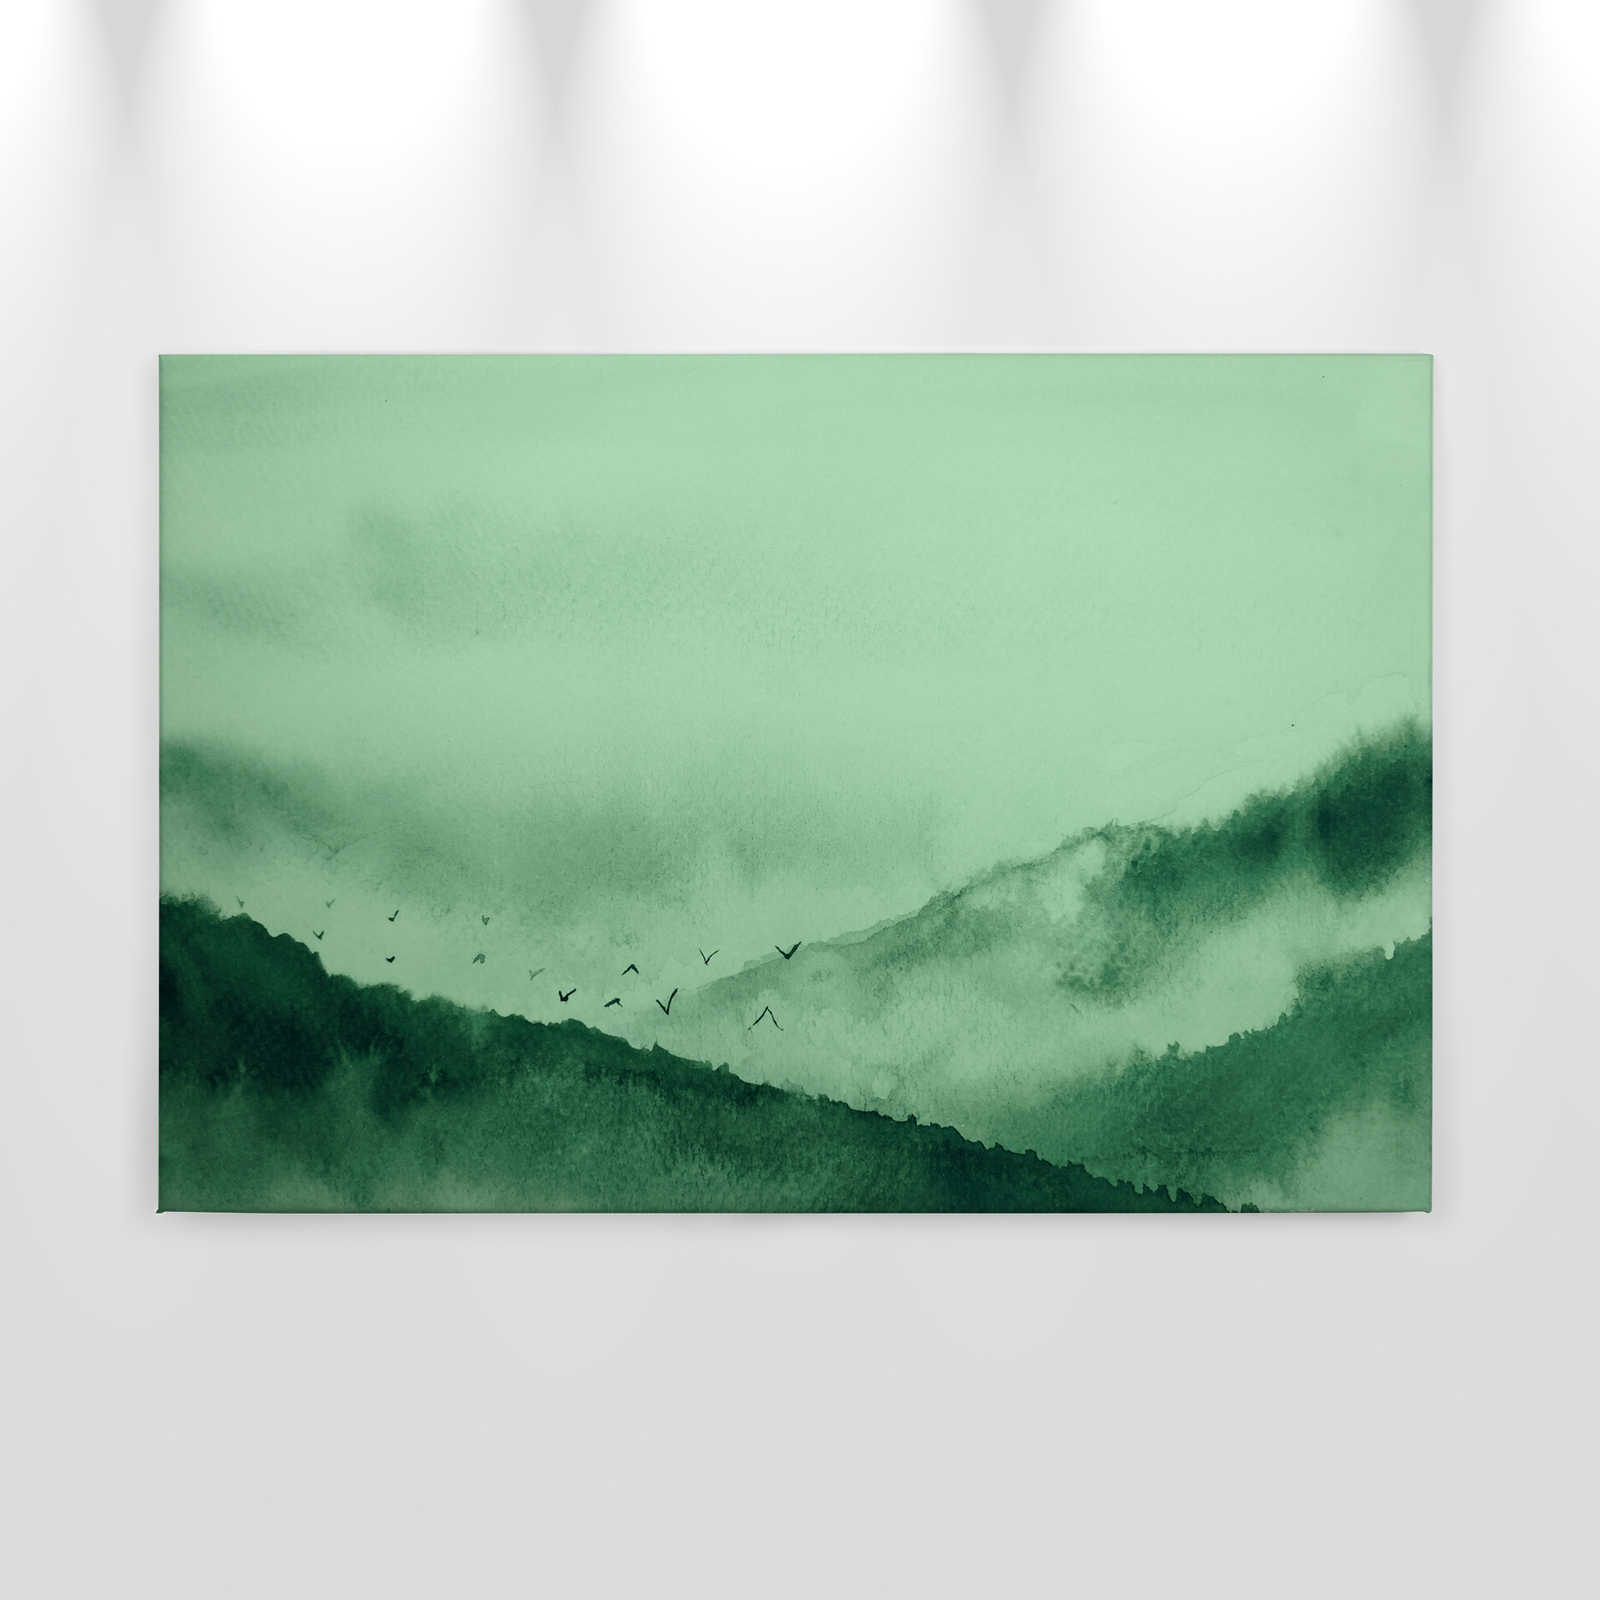             Lienzo con paisaje de niebla en estilo pintura | verde, negro - 0,90 m x 0,60 m
        